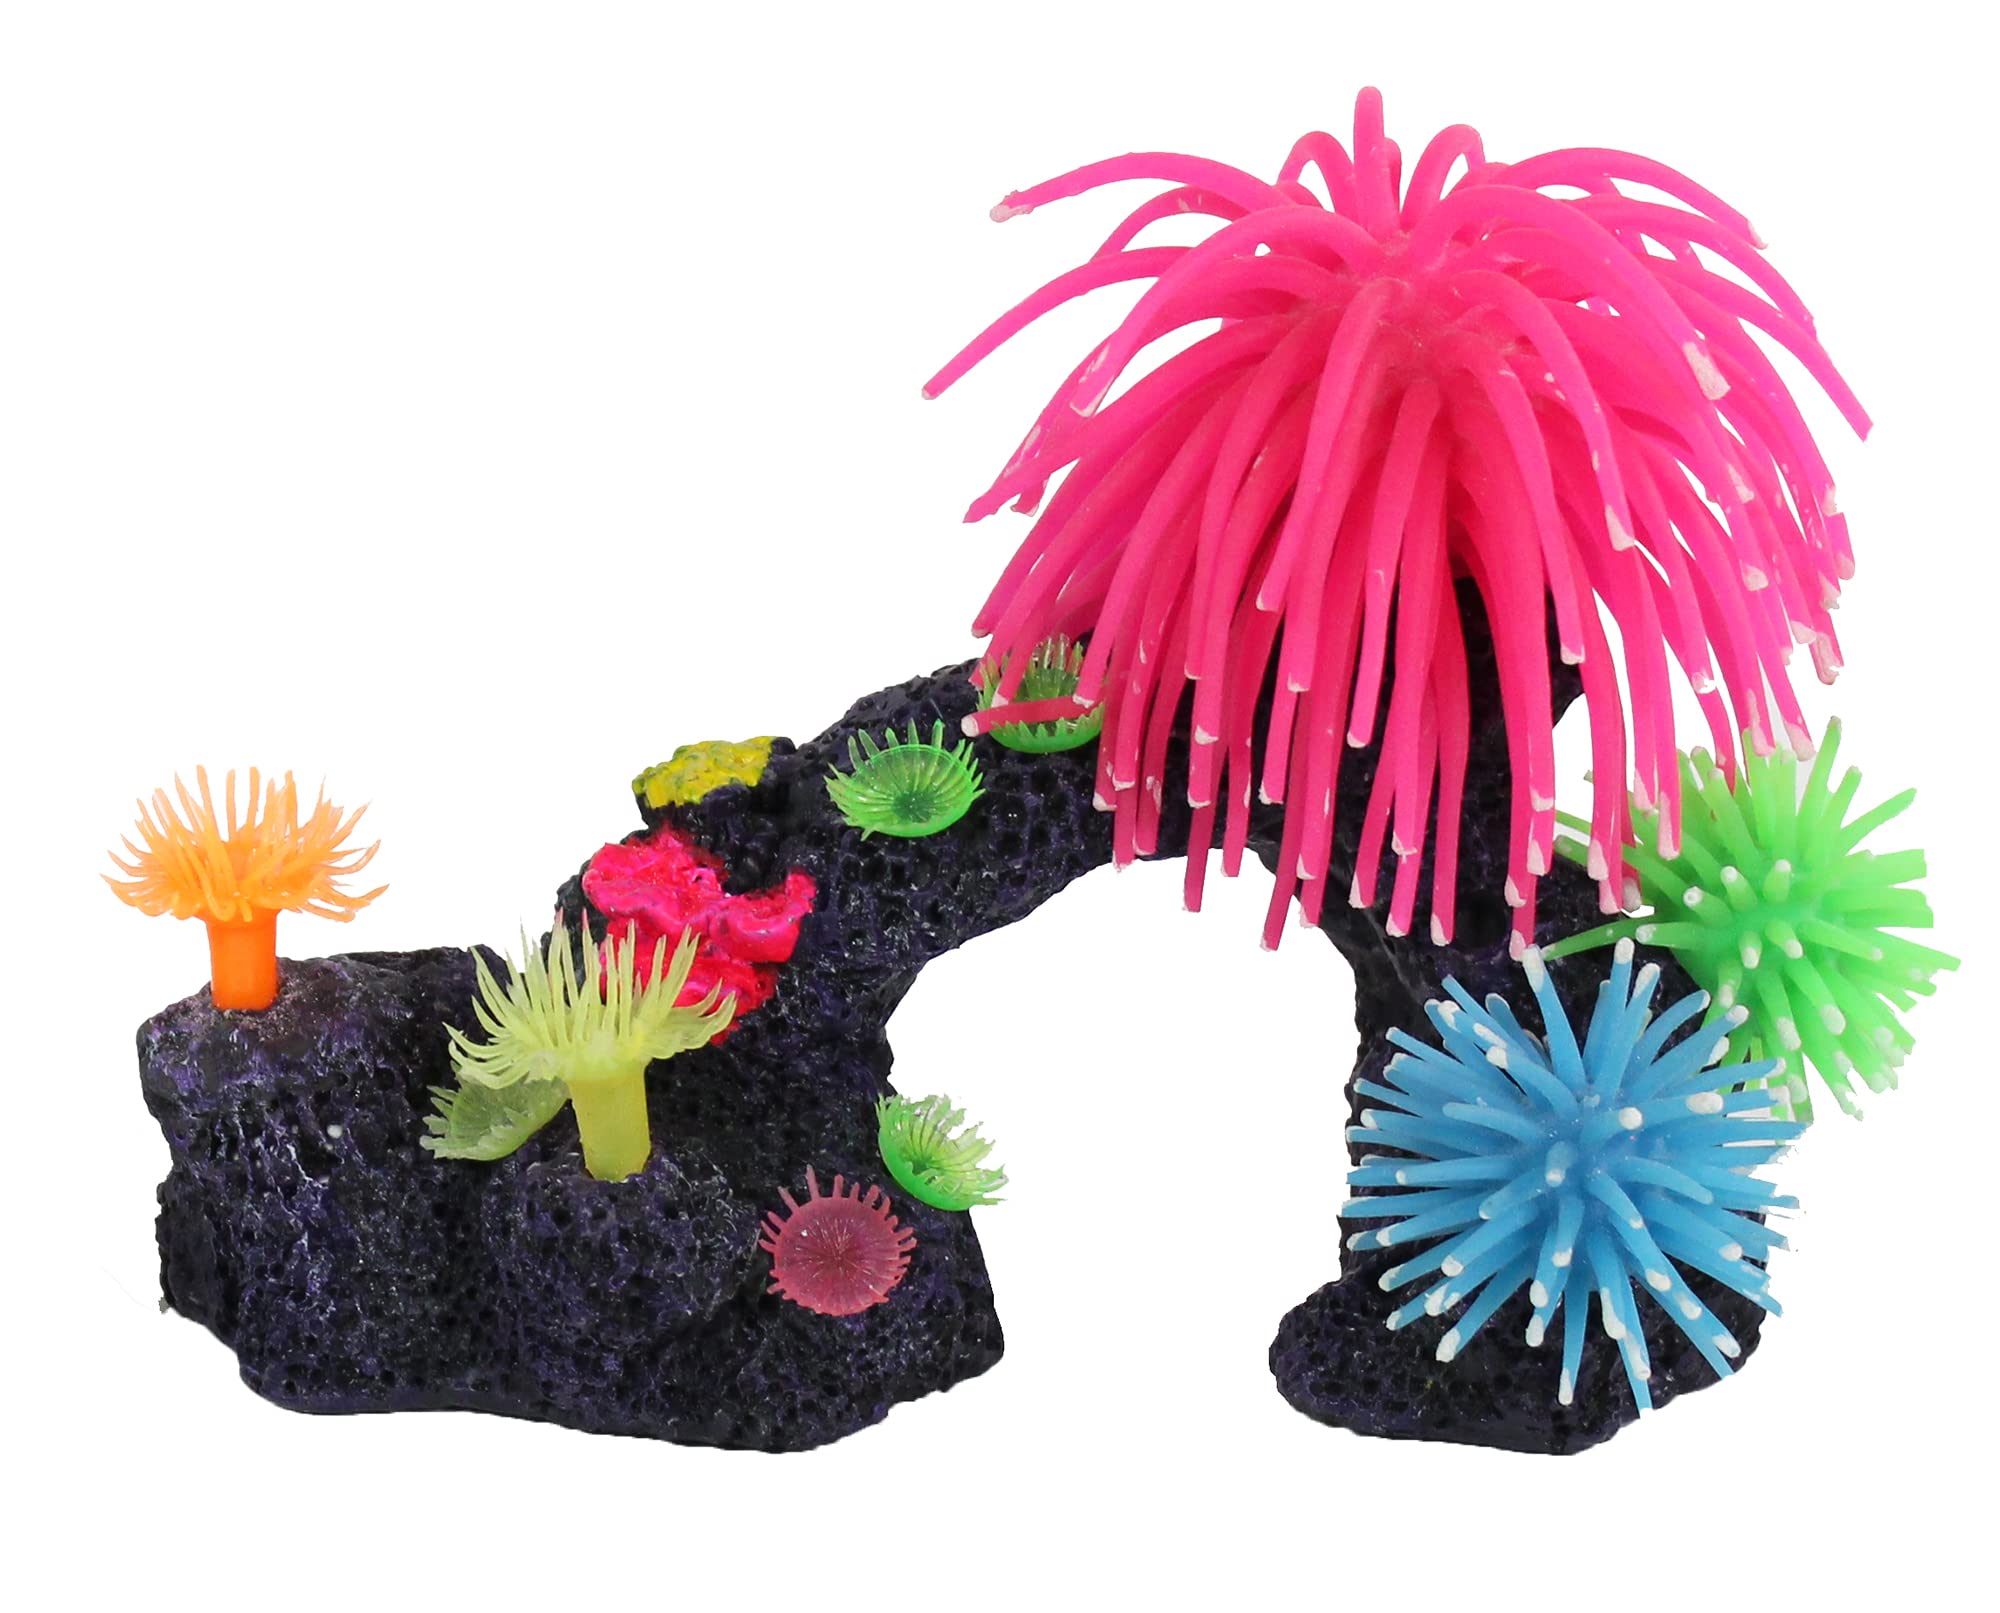 Penn-Plax Korallenriff Aquarium-Dekoration – lebensechte Bewegung und lebendige Farben – Bogen mit rosa Silikon-Anemone – Medium